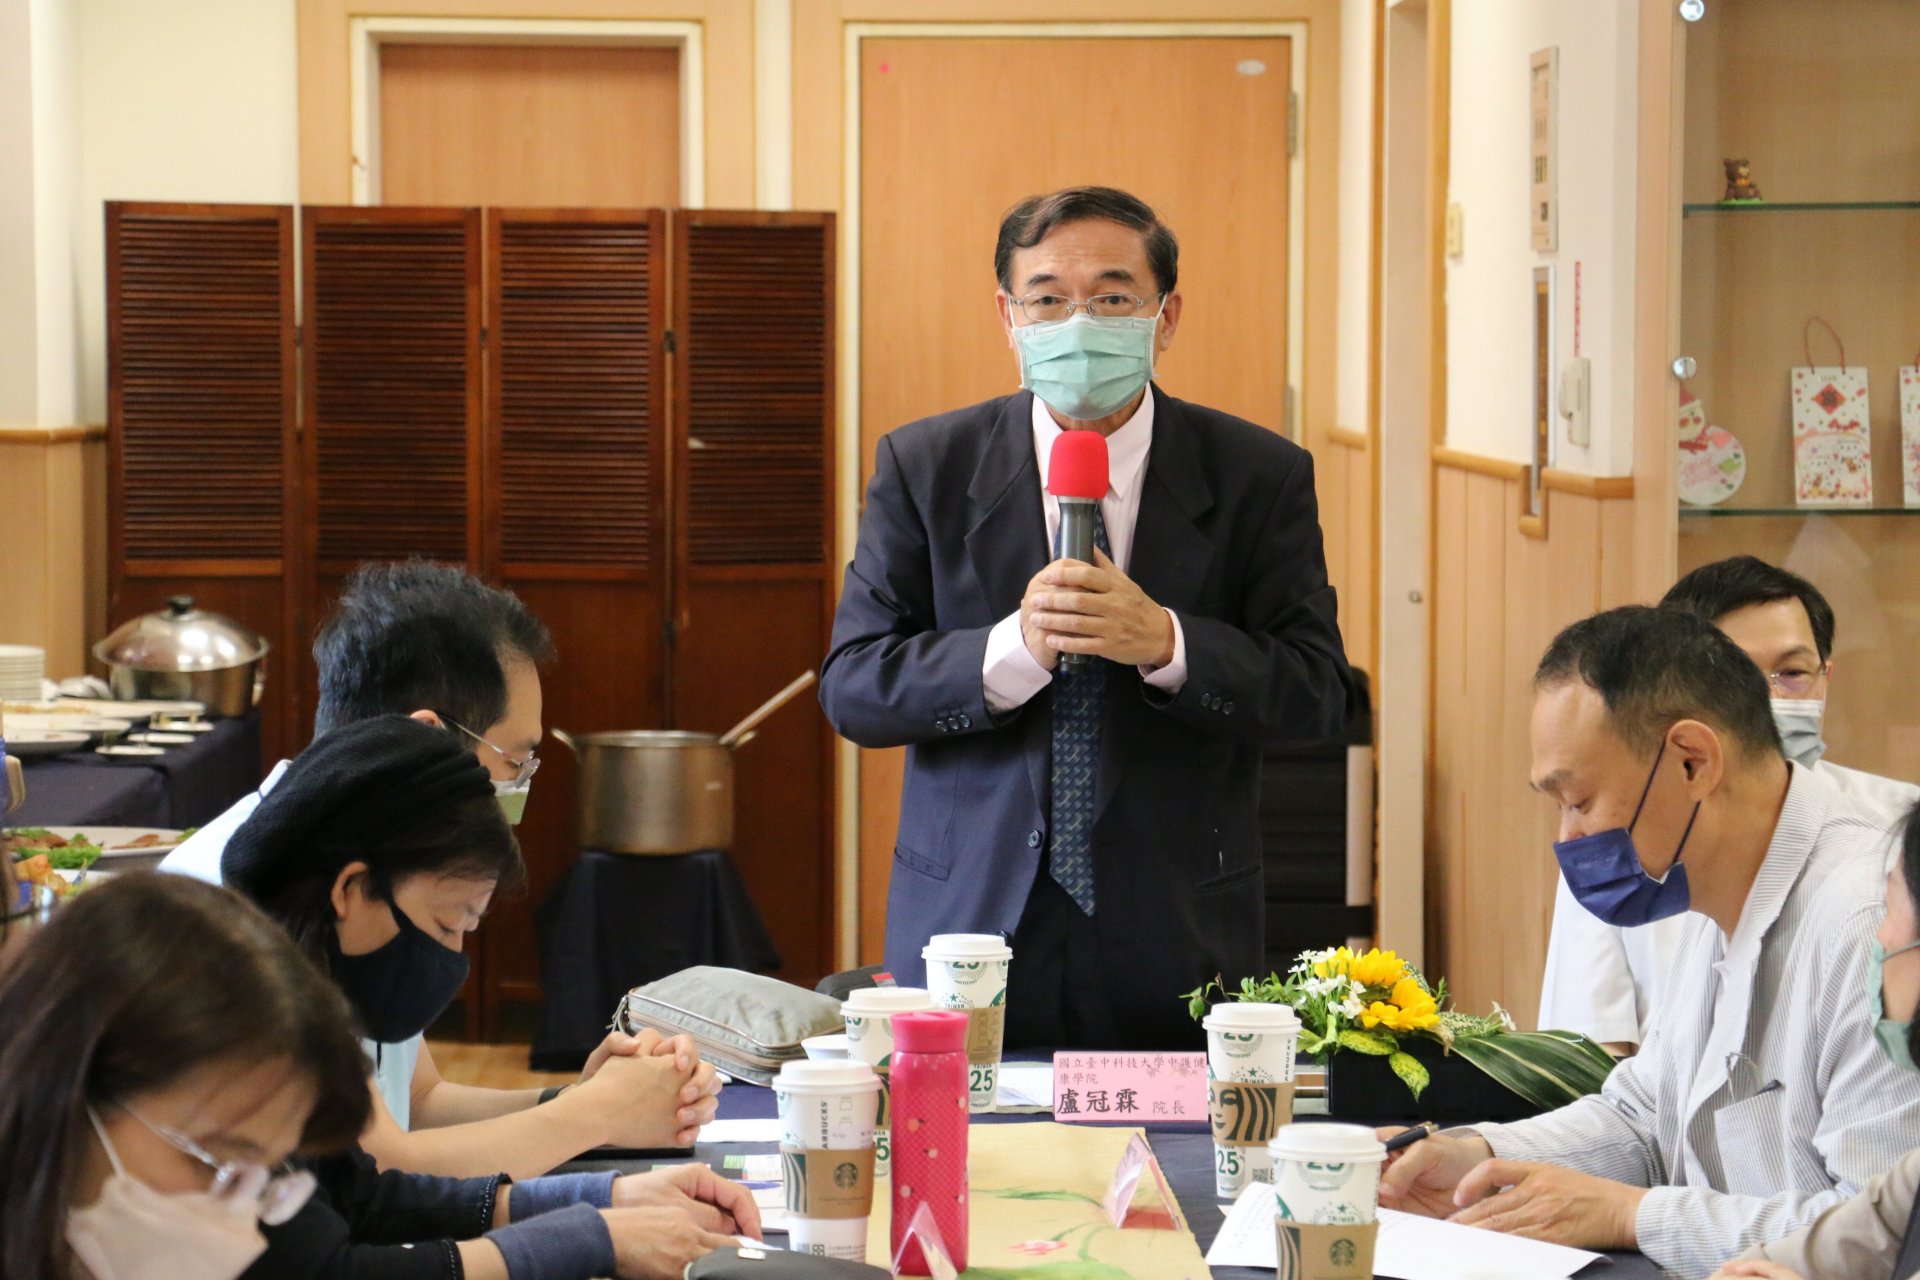 臺中科技大學中護健康學院盧冠霖院長致辭。